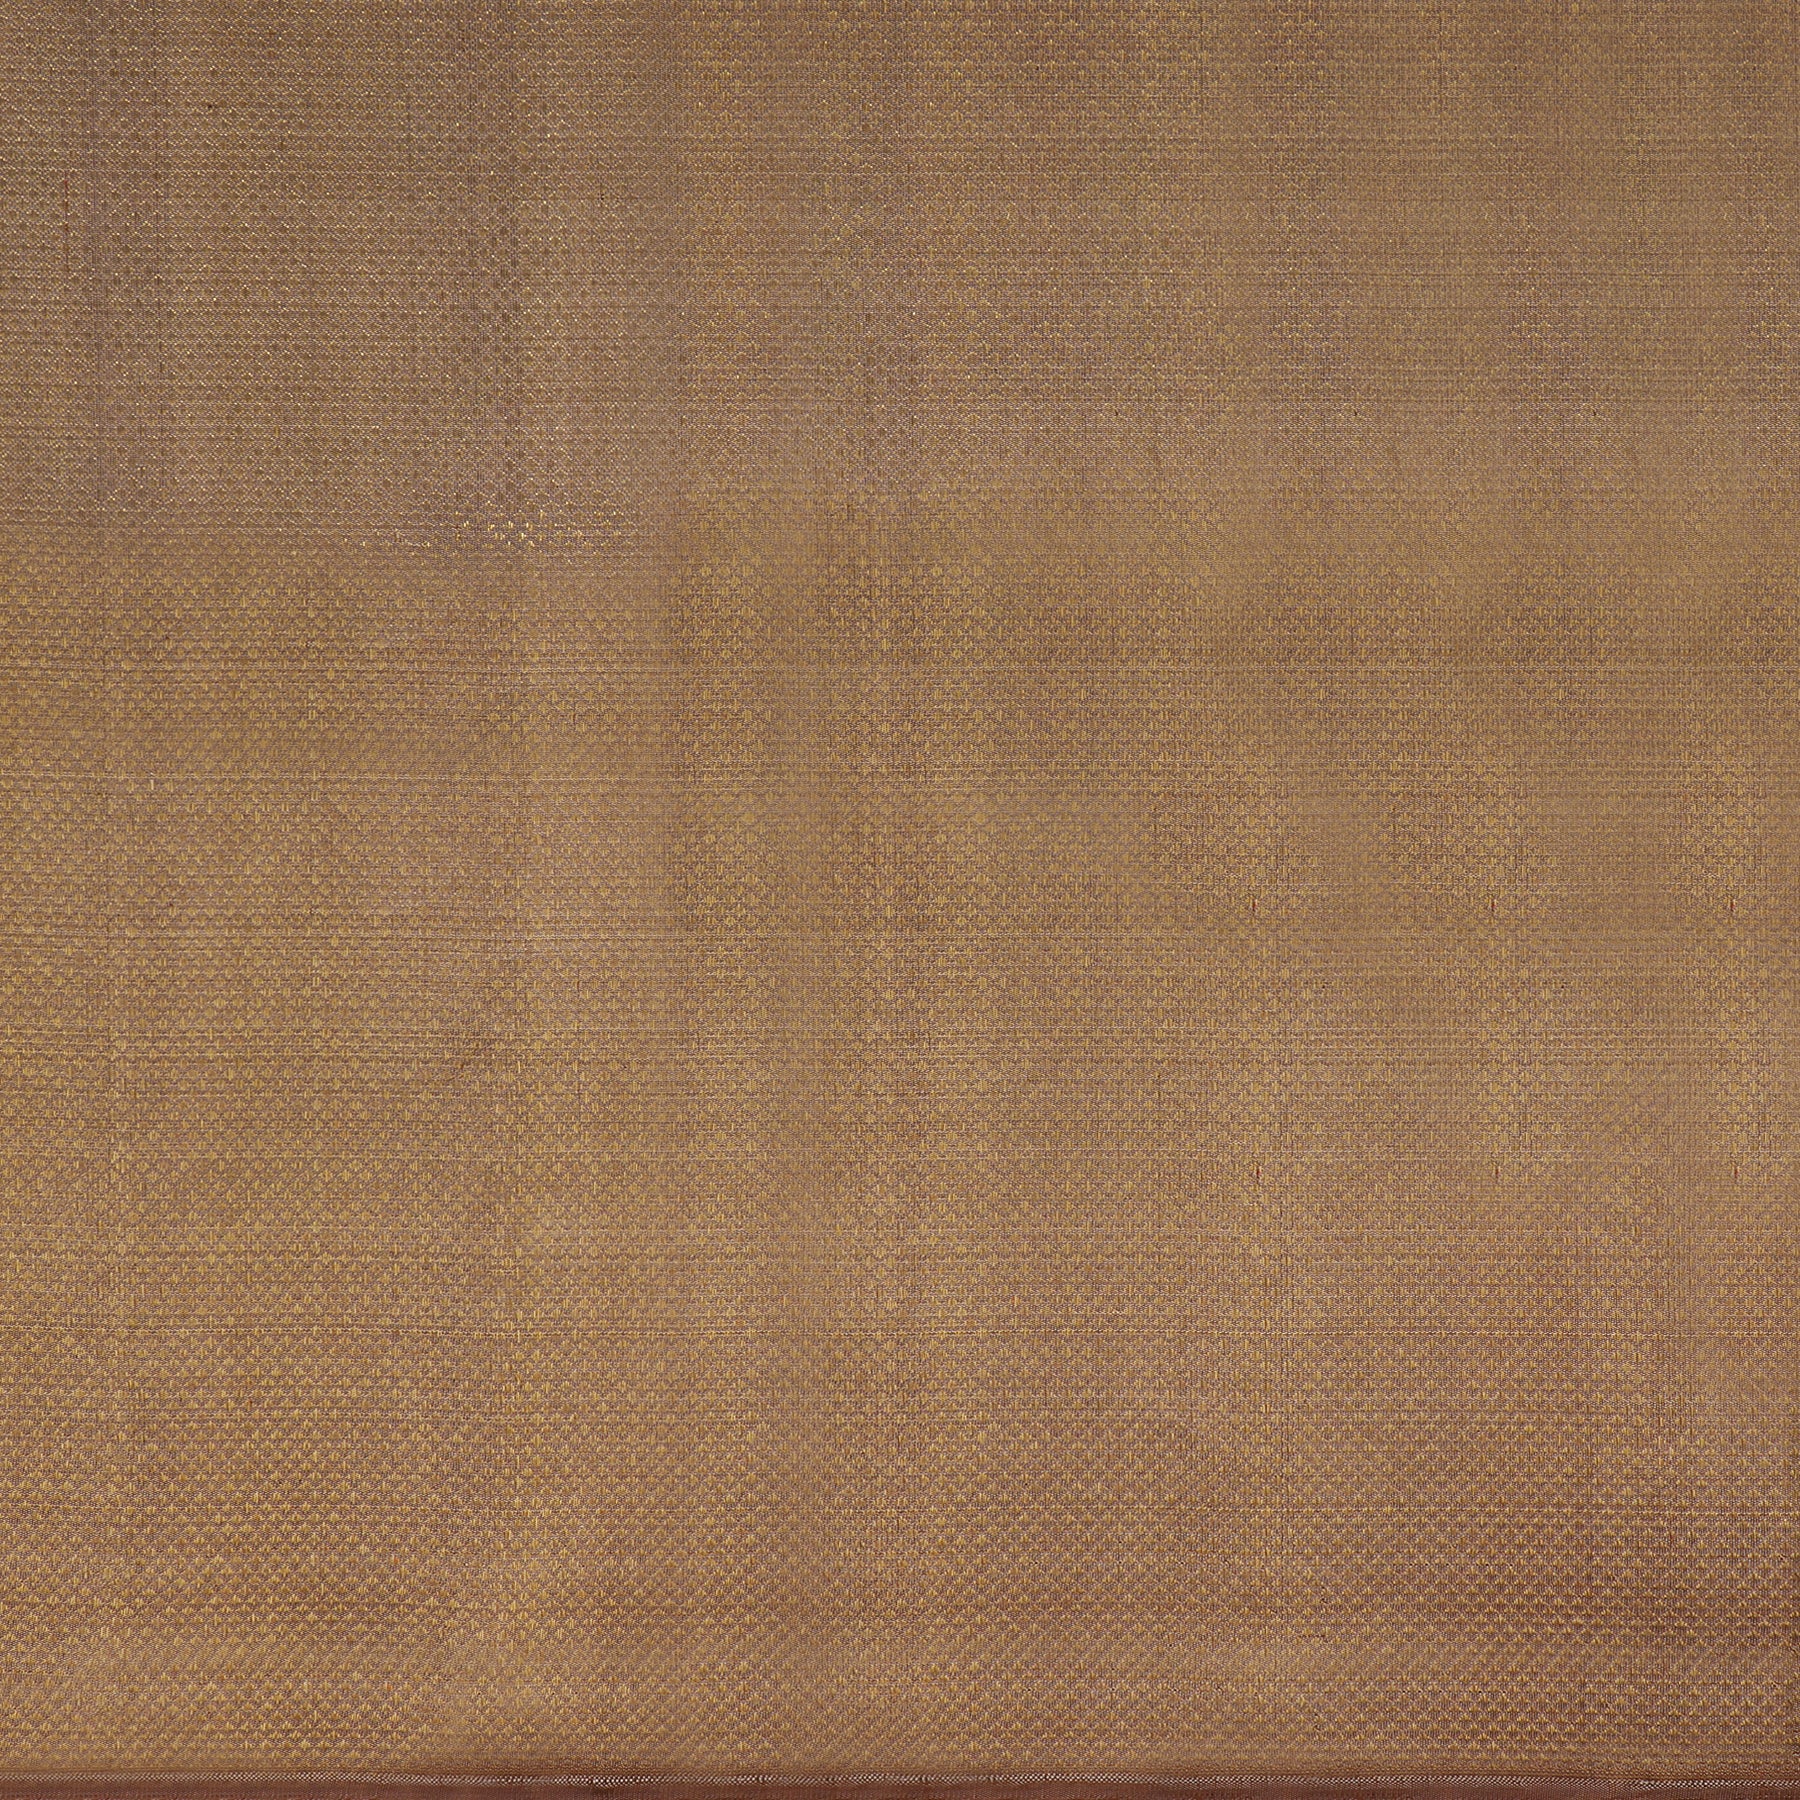 Kanakavalli Kanjivaram Silk Fabric Length 110-27-110301 - Full View